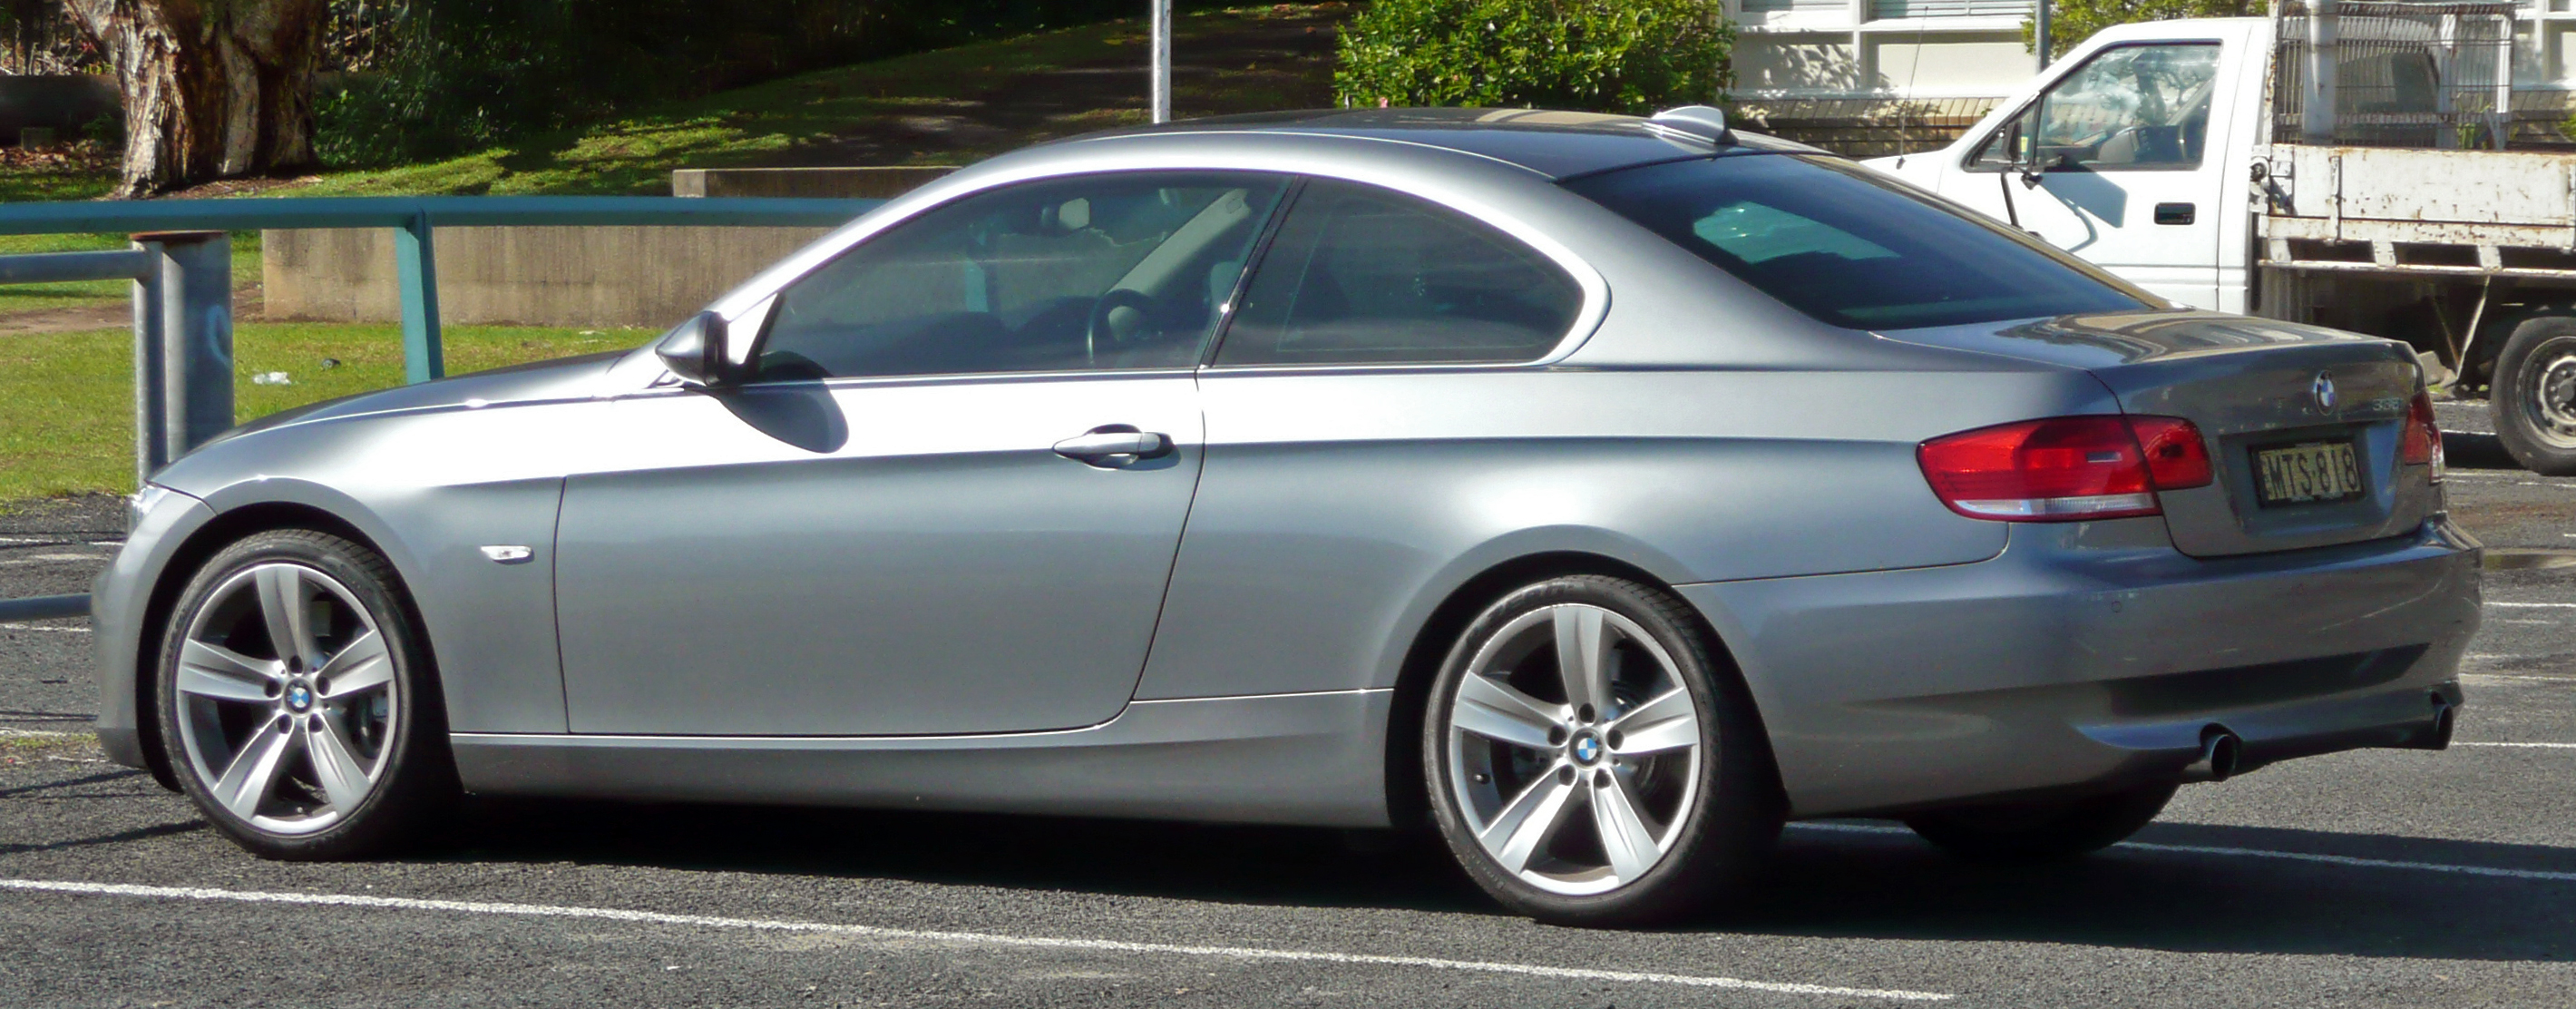 File:2006-2010 BMW 335i (E92) coupe 03.jpg - Wikimedia Commons